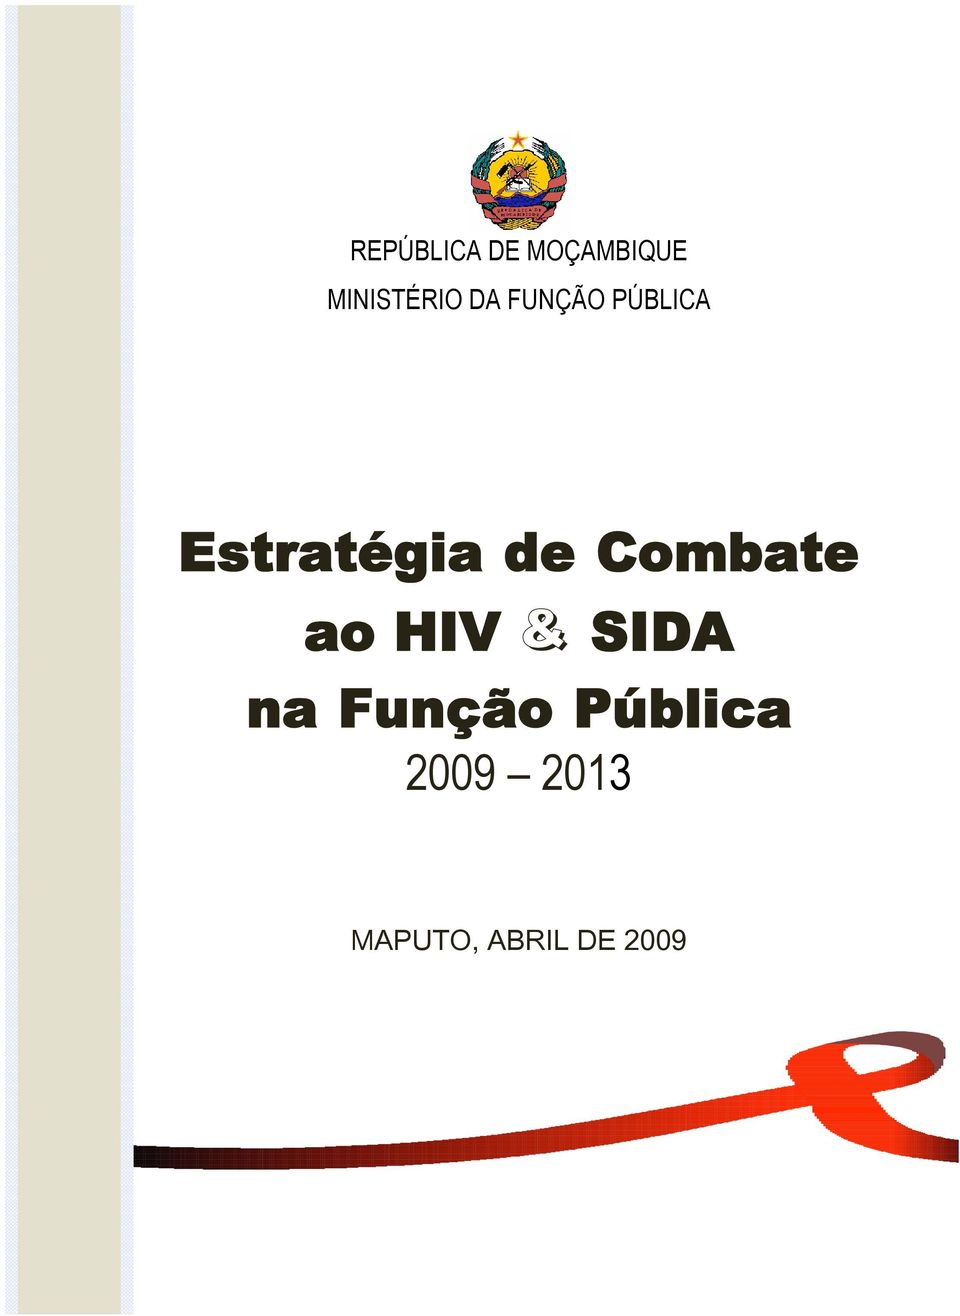 Estratégia de Cmbate a HIV & SIDA